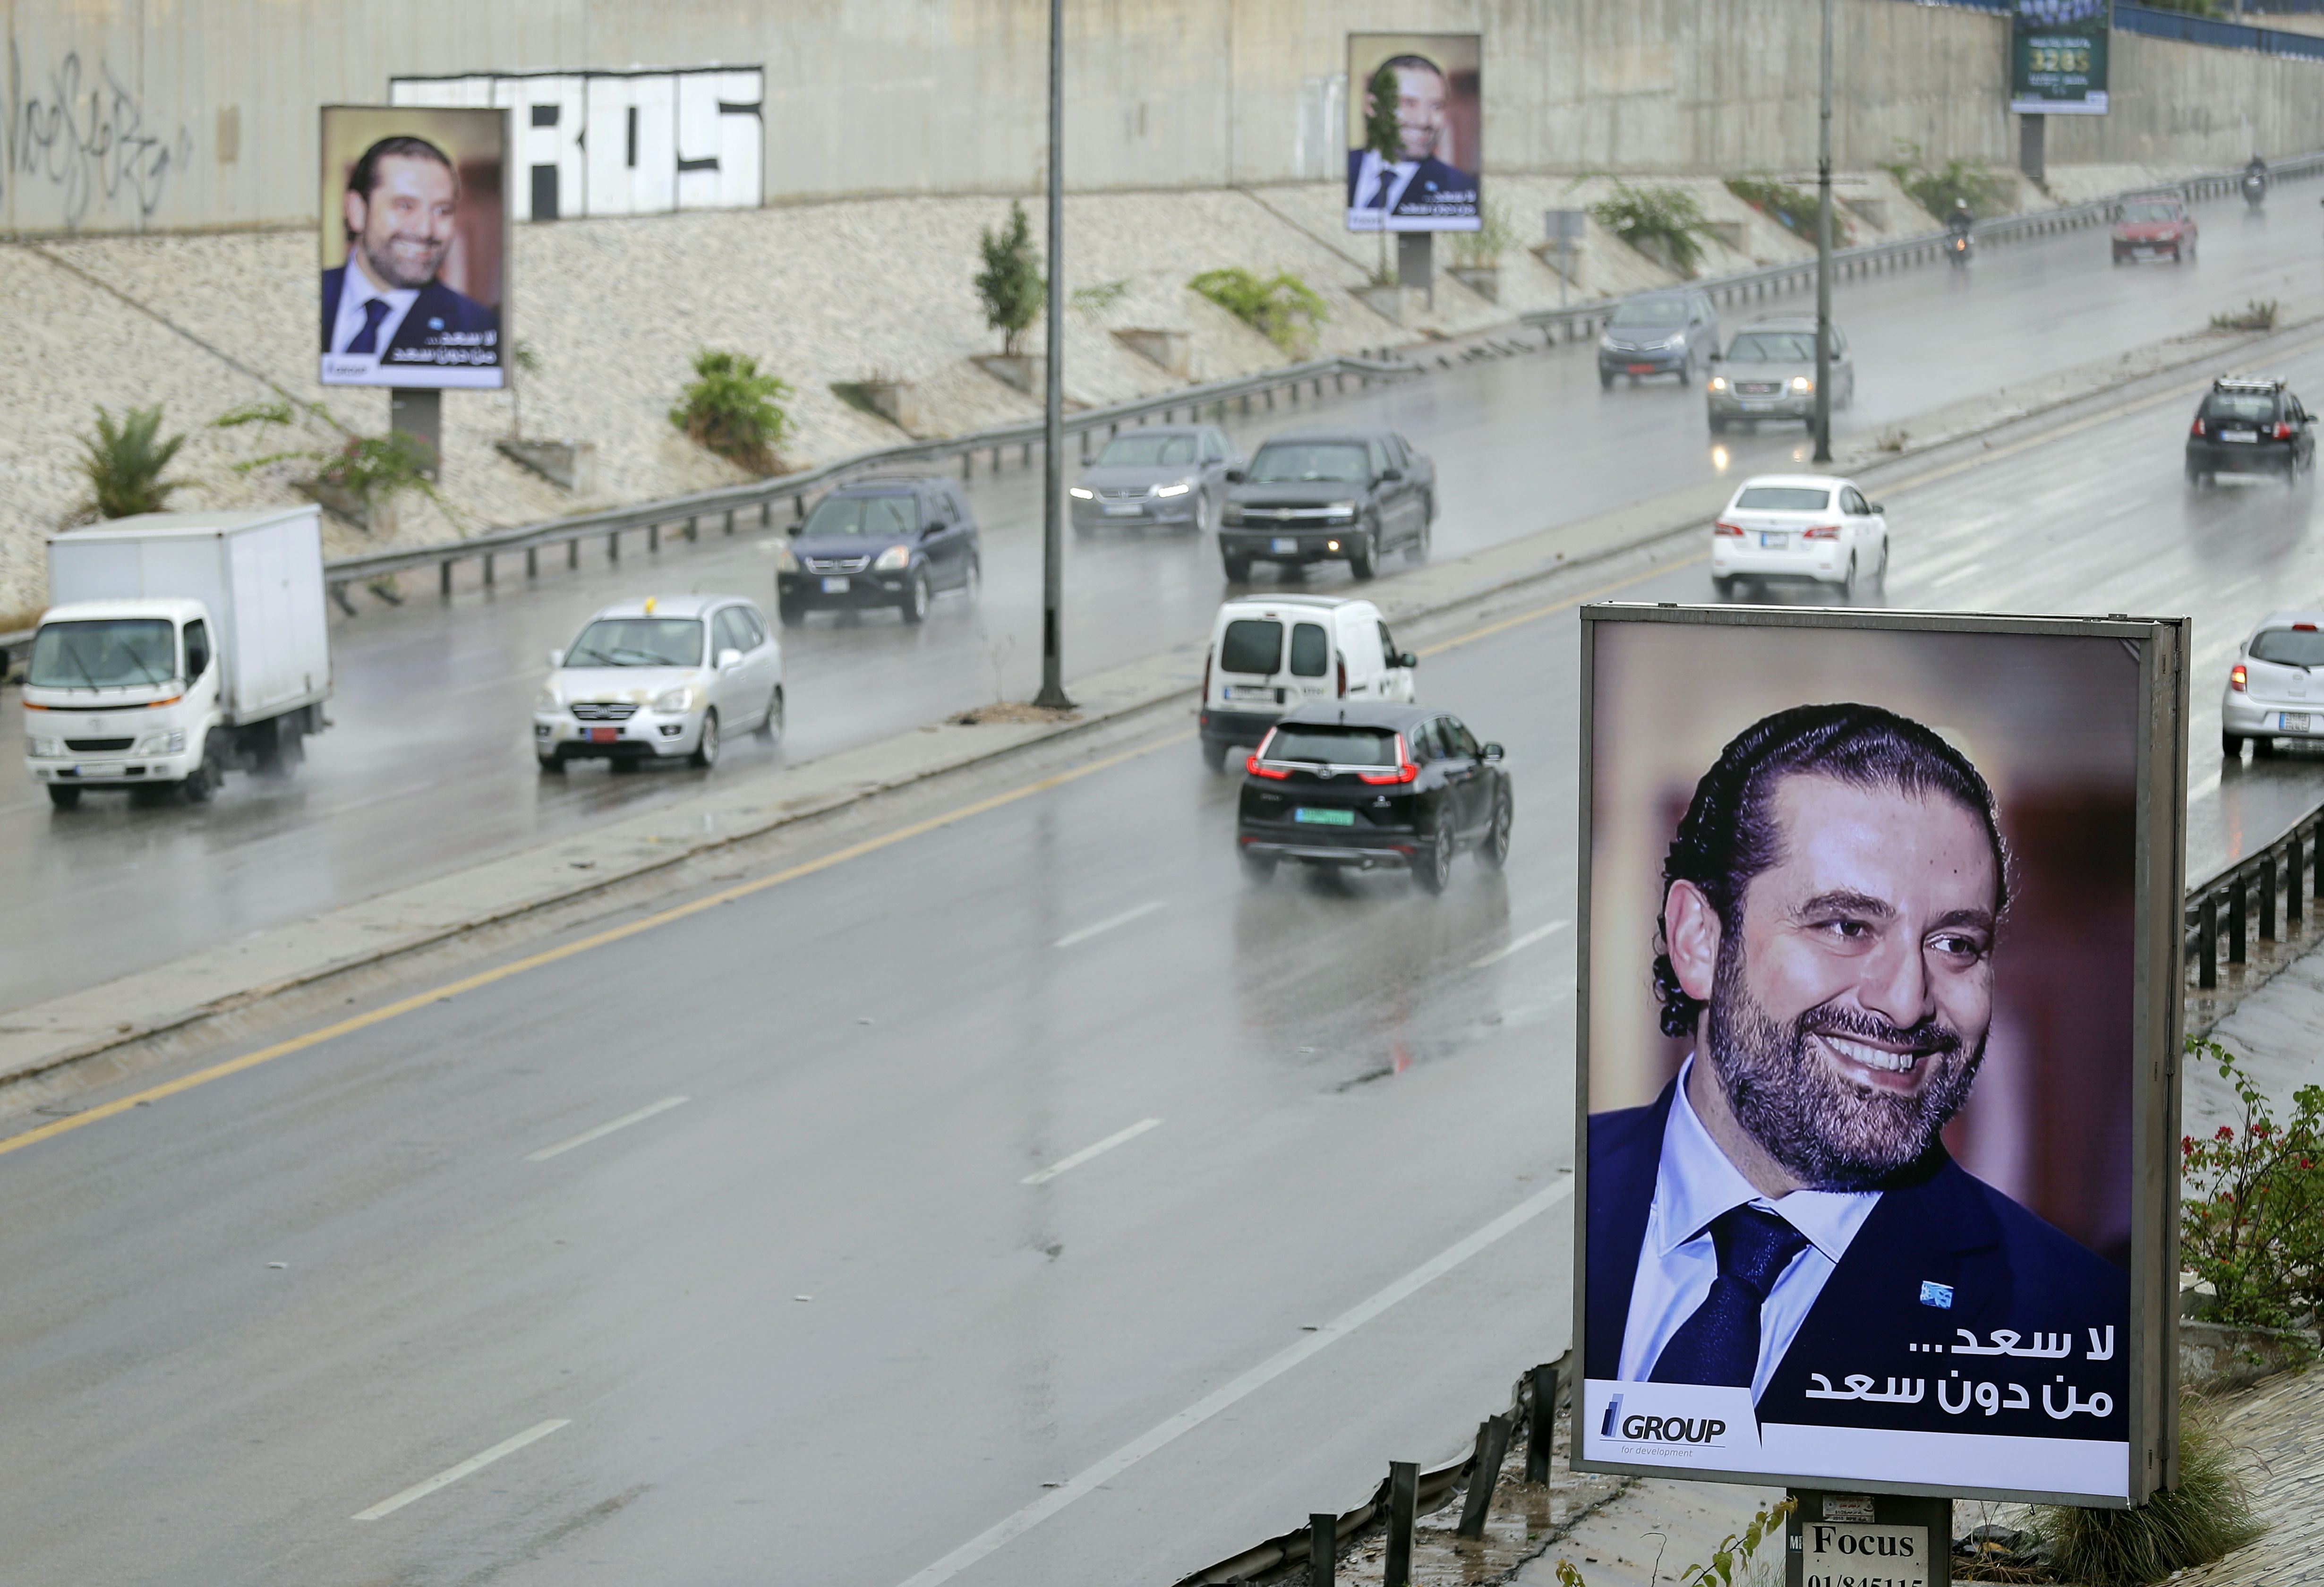 صور الحريرى على الطرق العامة فى لبنان